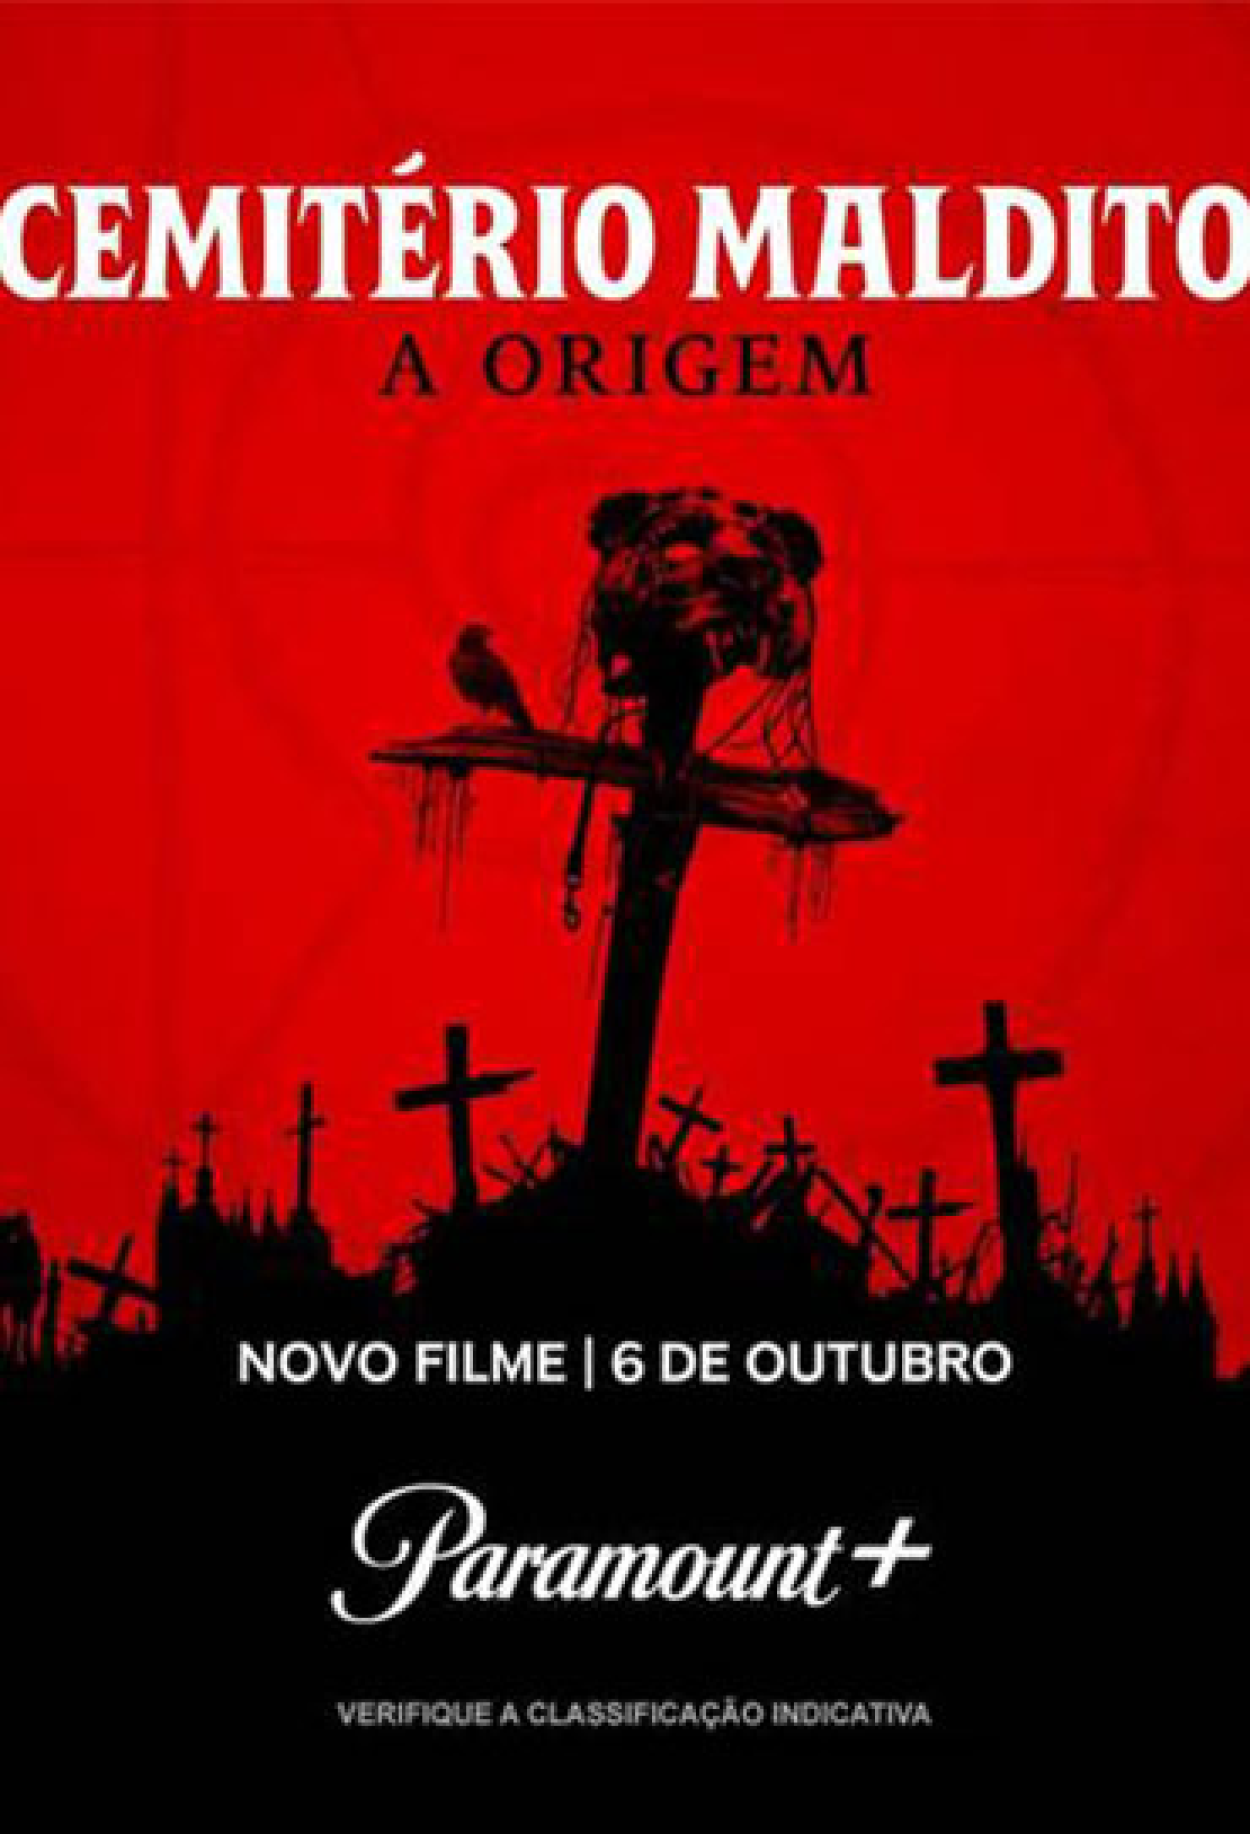 Assassino a Preço Fixo 2 - A Ressureição (Filme), Trailer, Sinopse e  Curiosidades - Cinema10